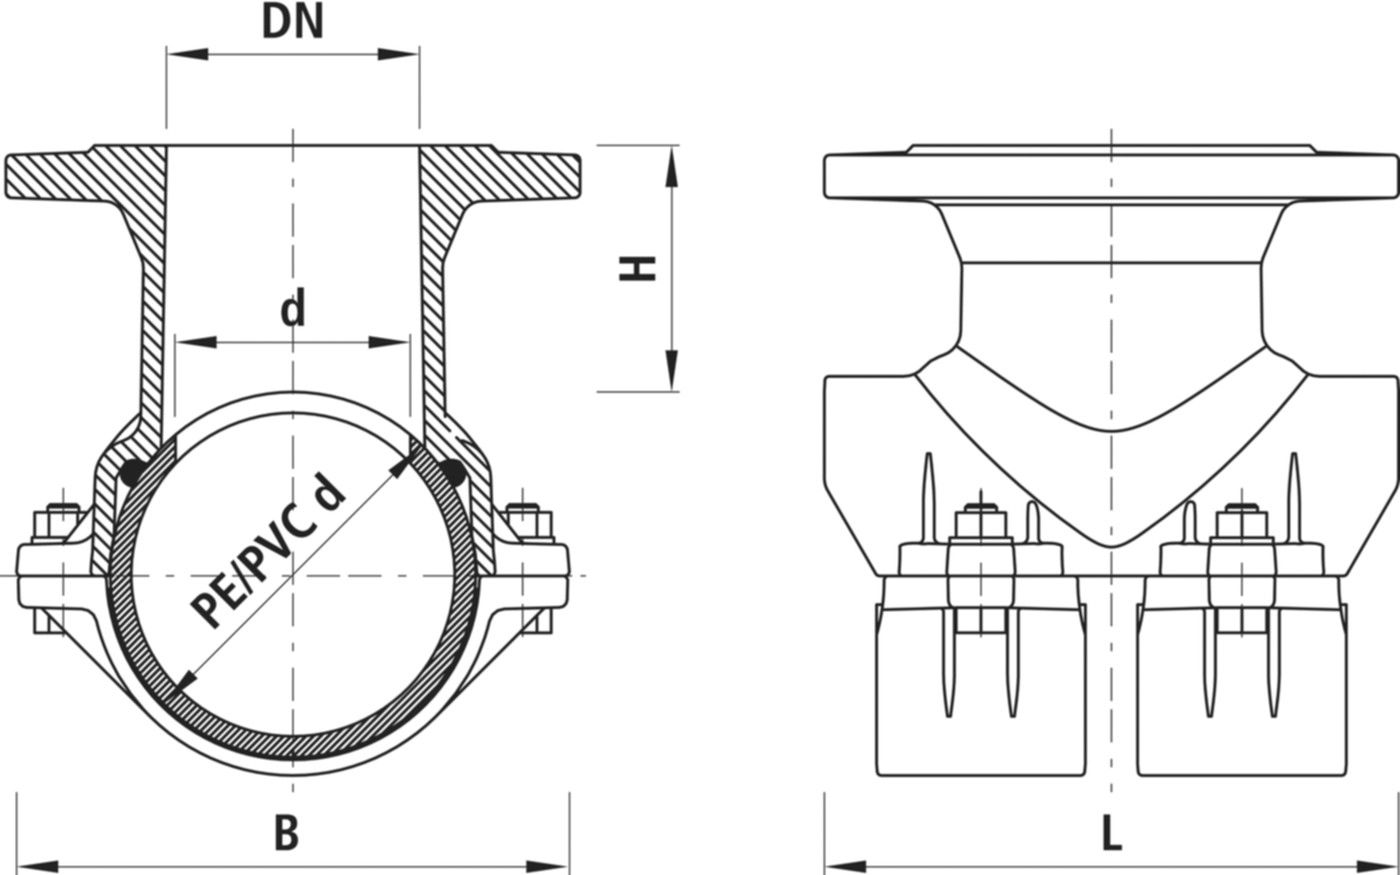 Haku-Anbohrschelle mit Flansch 5230 d 140mm / DN 100 - Hawle Hausanschluss- und Anbohrarmaturen